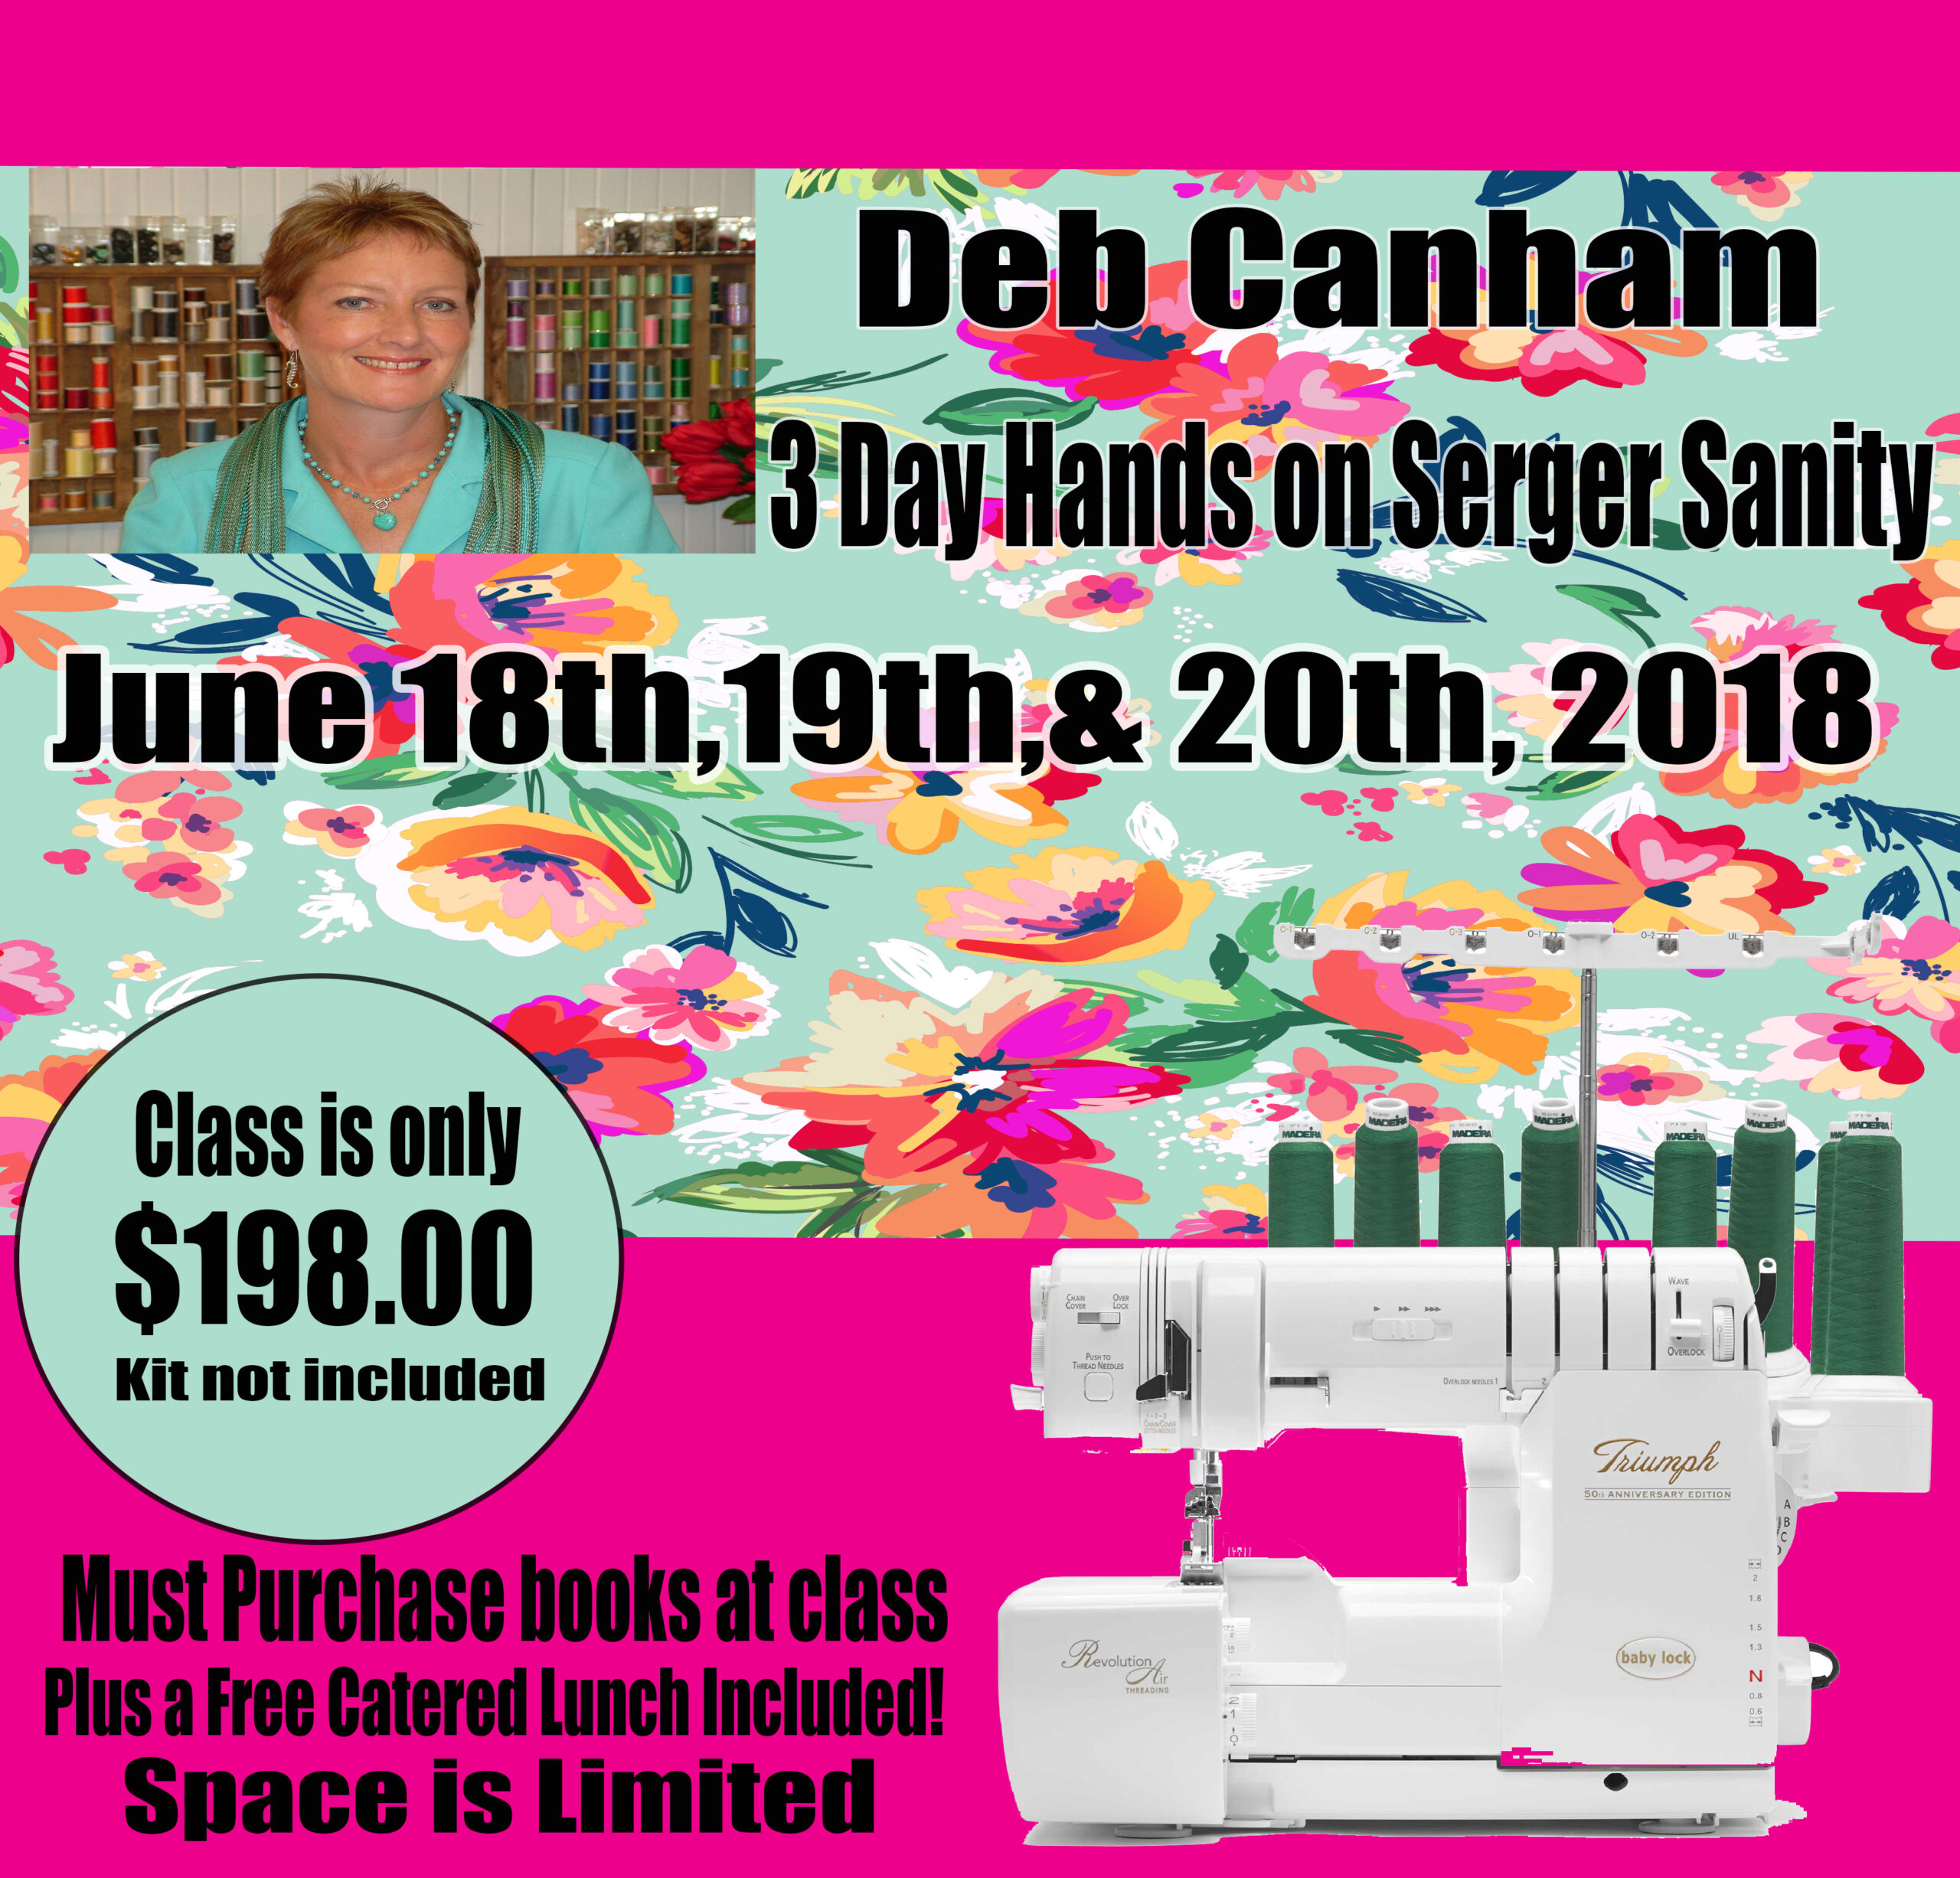 Deb Canham June 18 19 20